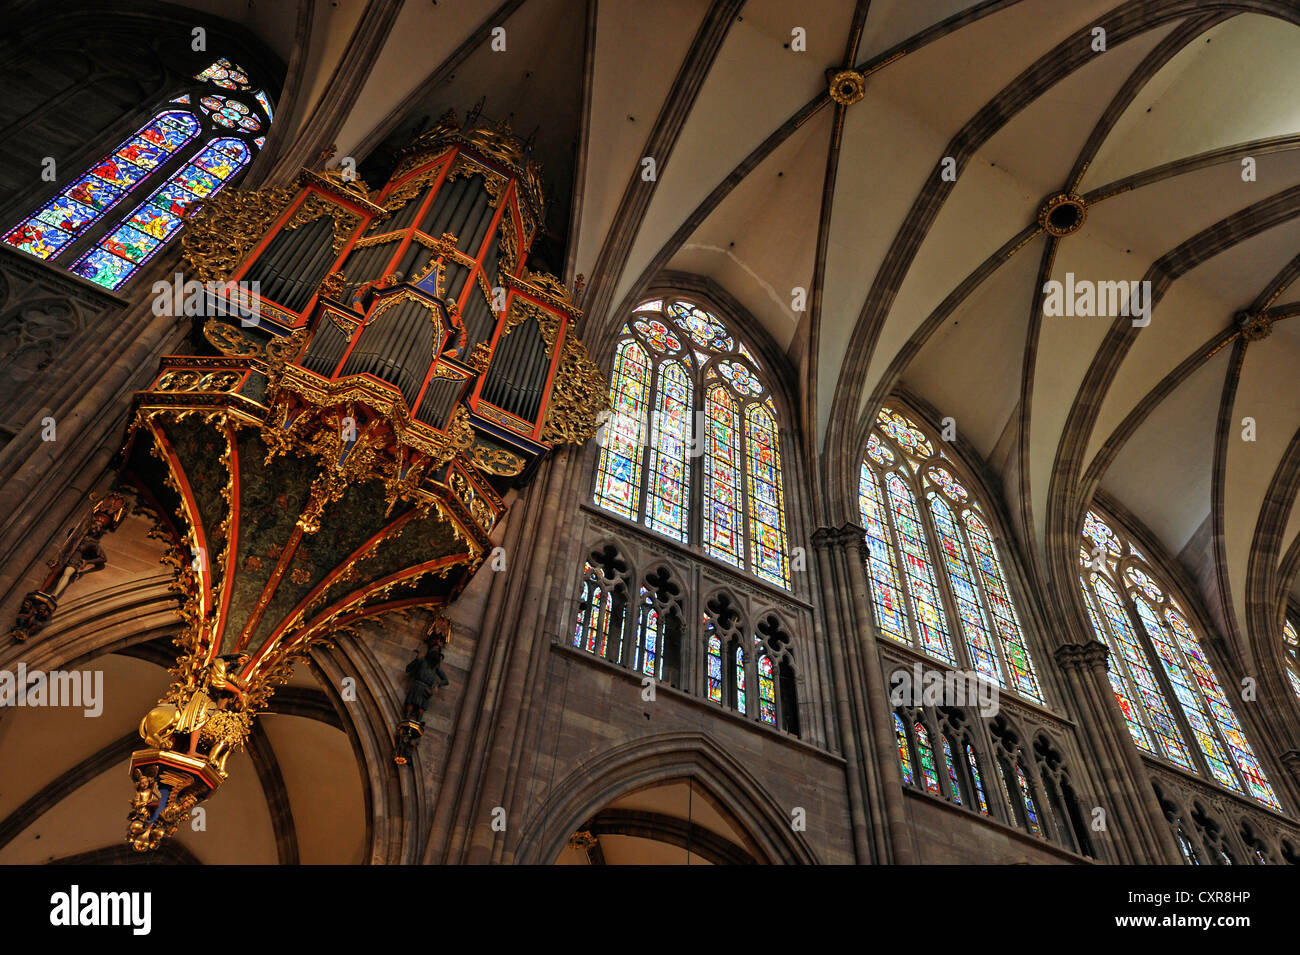 Orgue dans la nef avec son boîtier gothique conservé, nef, vue de l'intérieur de la cathédrale de Strasbourg, la cathédrale de Notre Dame de Banque D'Images